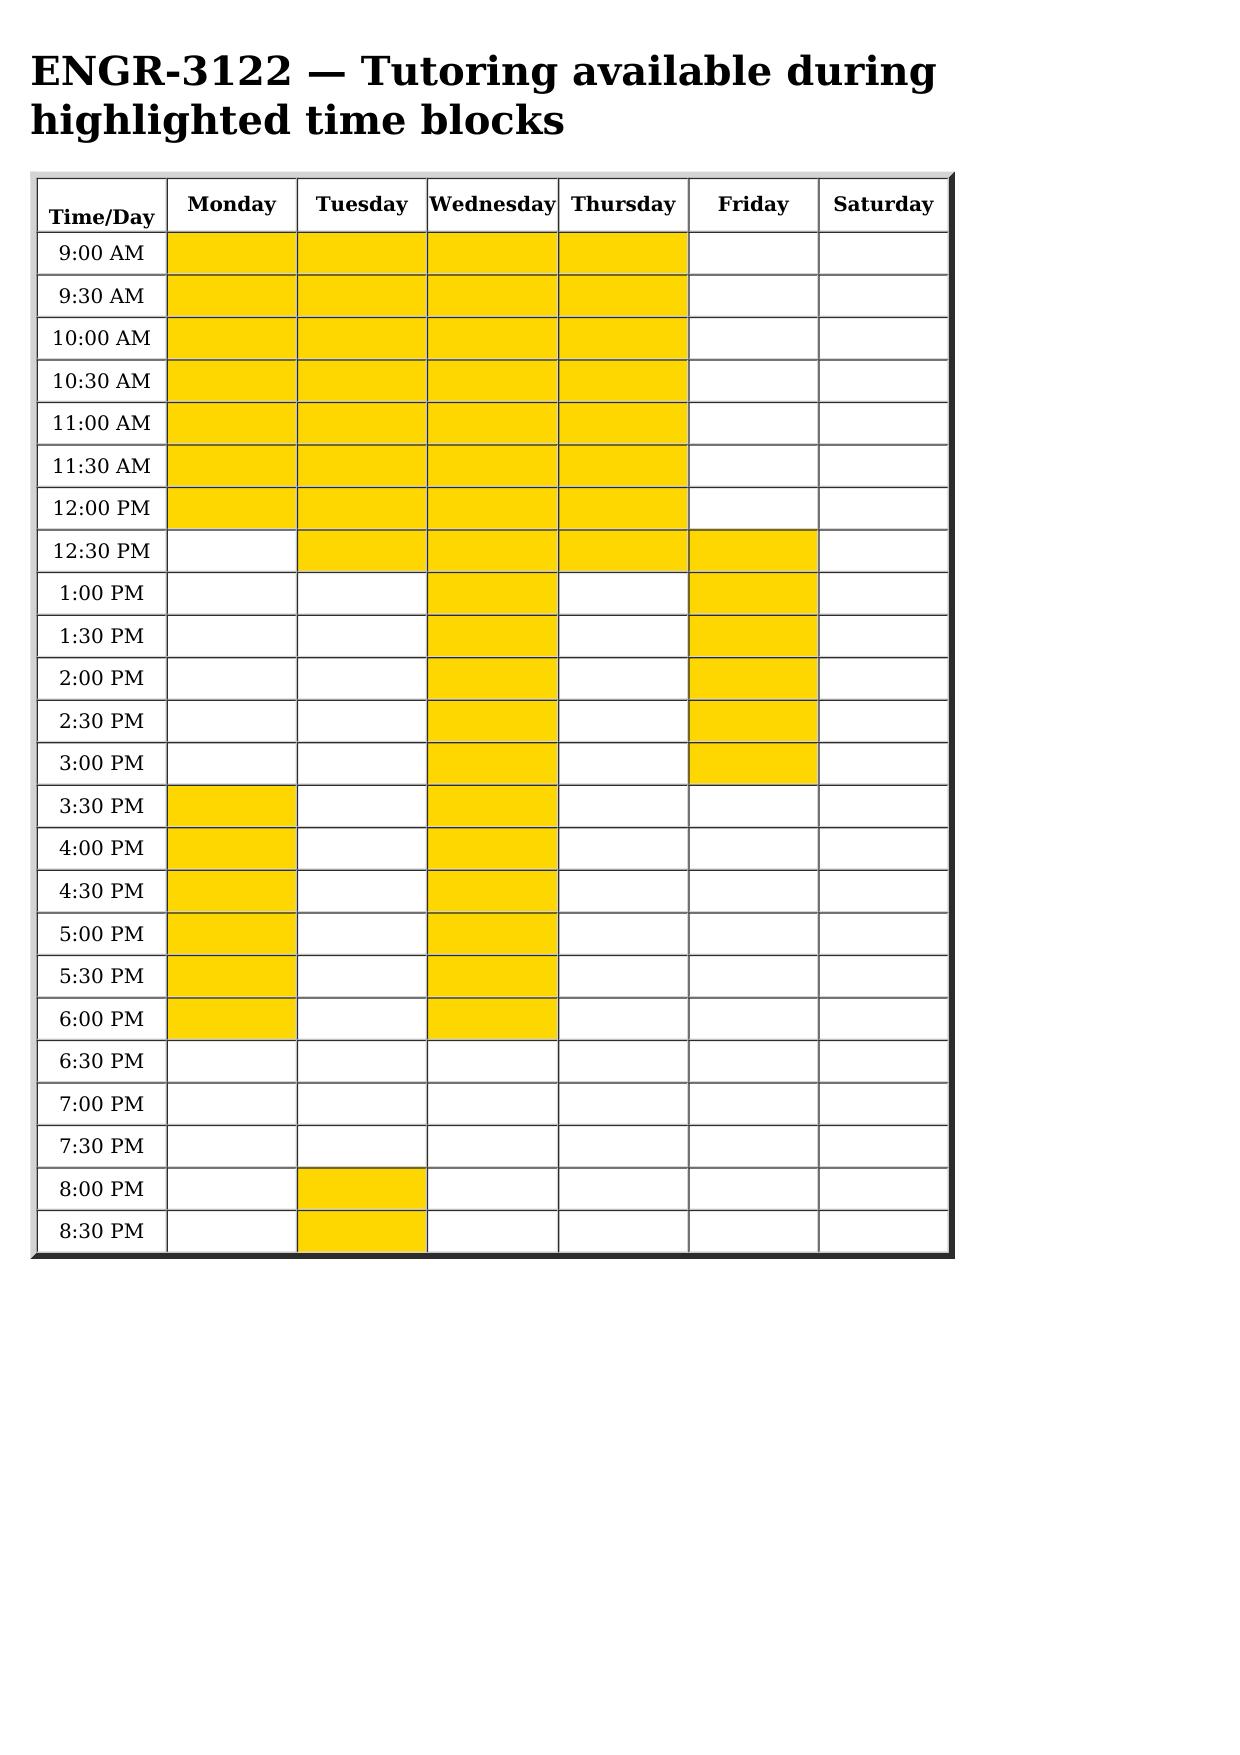 engr 3122 schedule